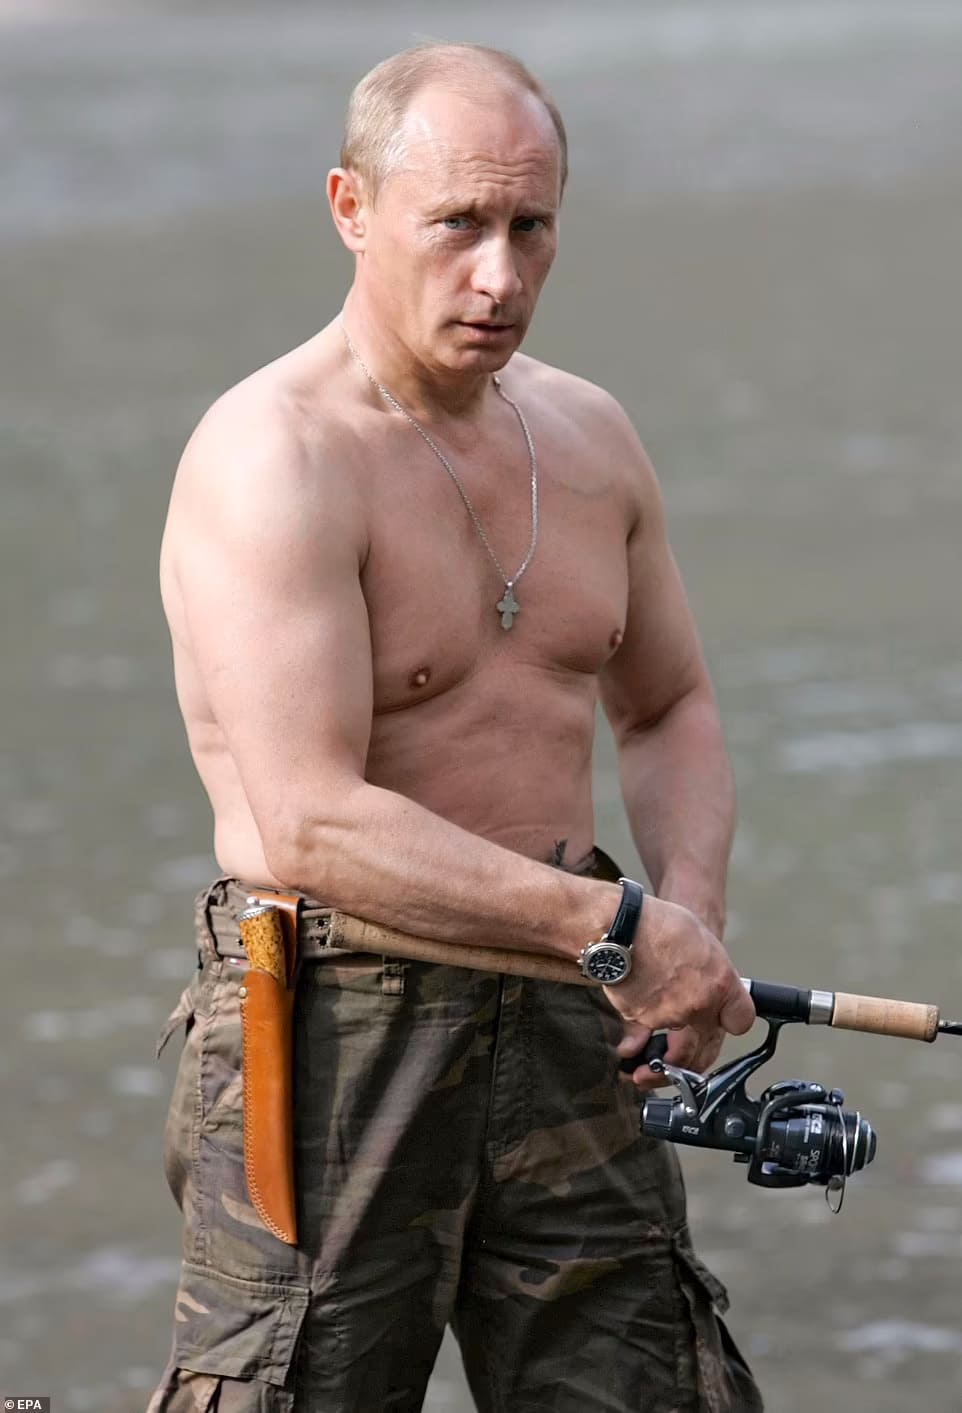 [독점] 푸틴, 스테로이드 치료로 인한 '스테로이드 분노' 앓고 있을 수도 VIDEO: 'Bloated' Putin may be suffering from steroid treatment for cancer, spies claim